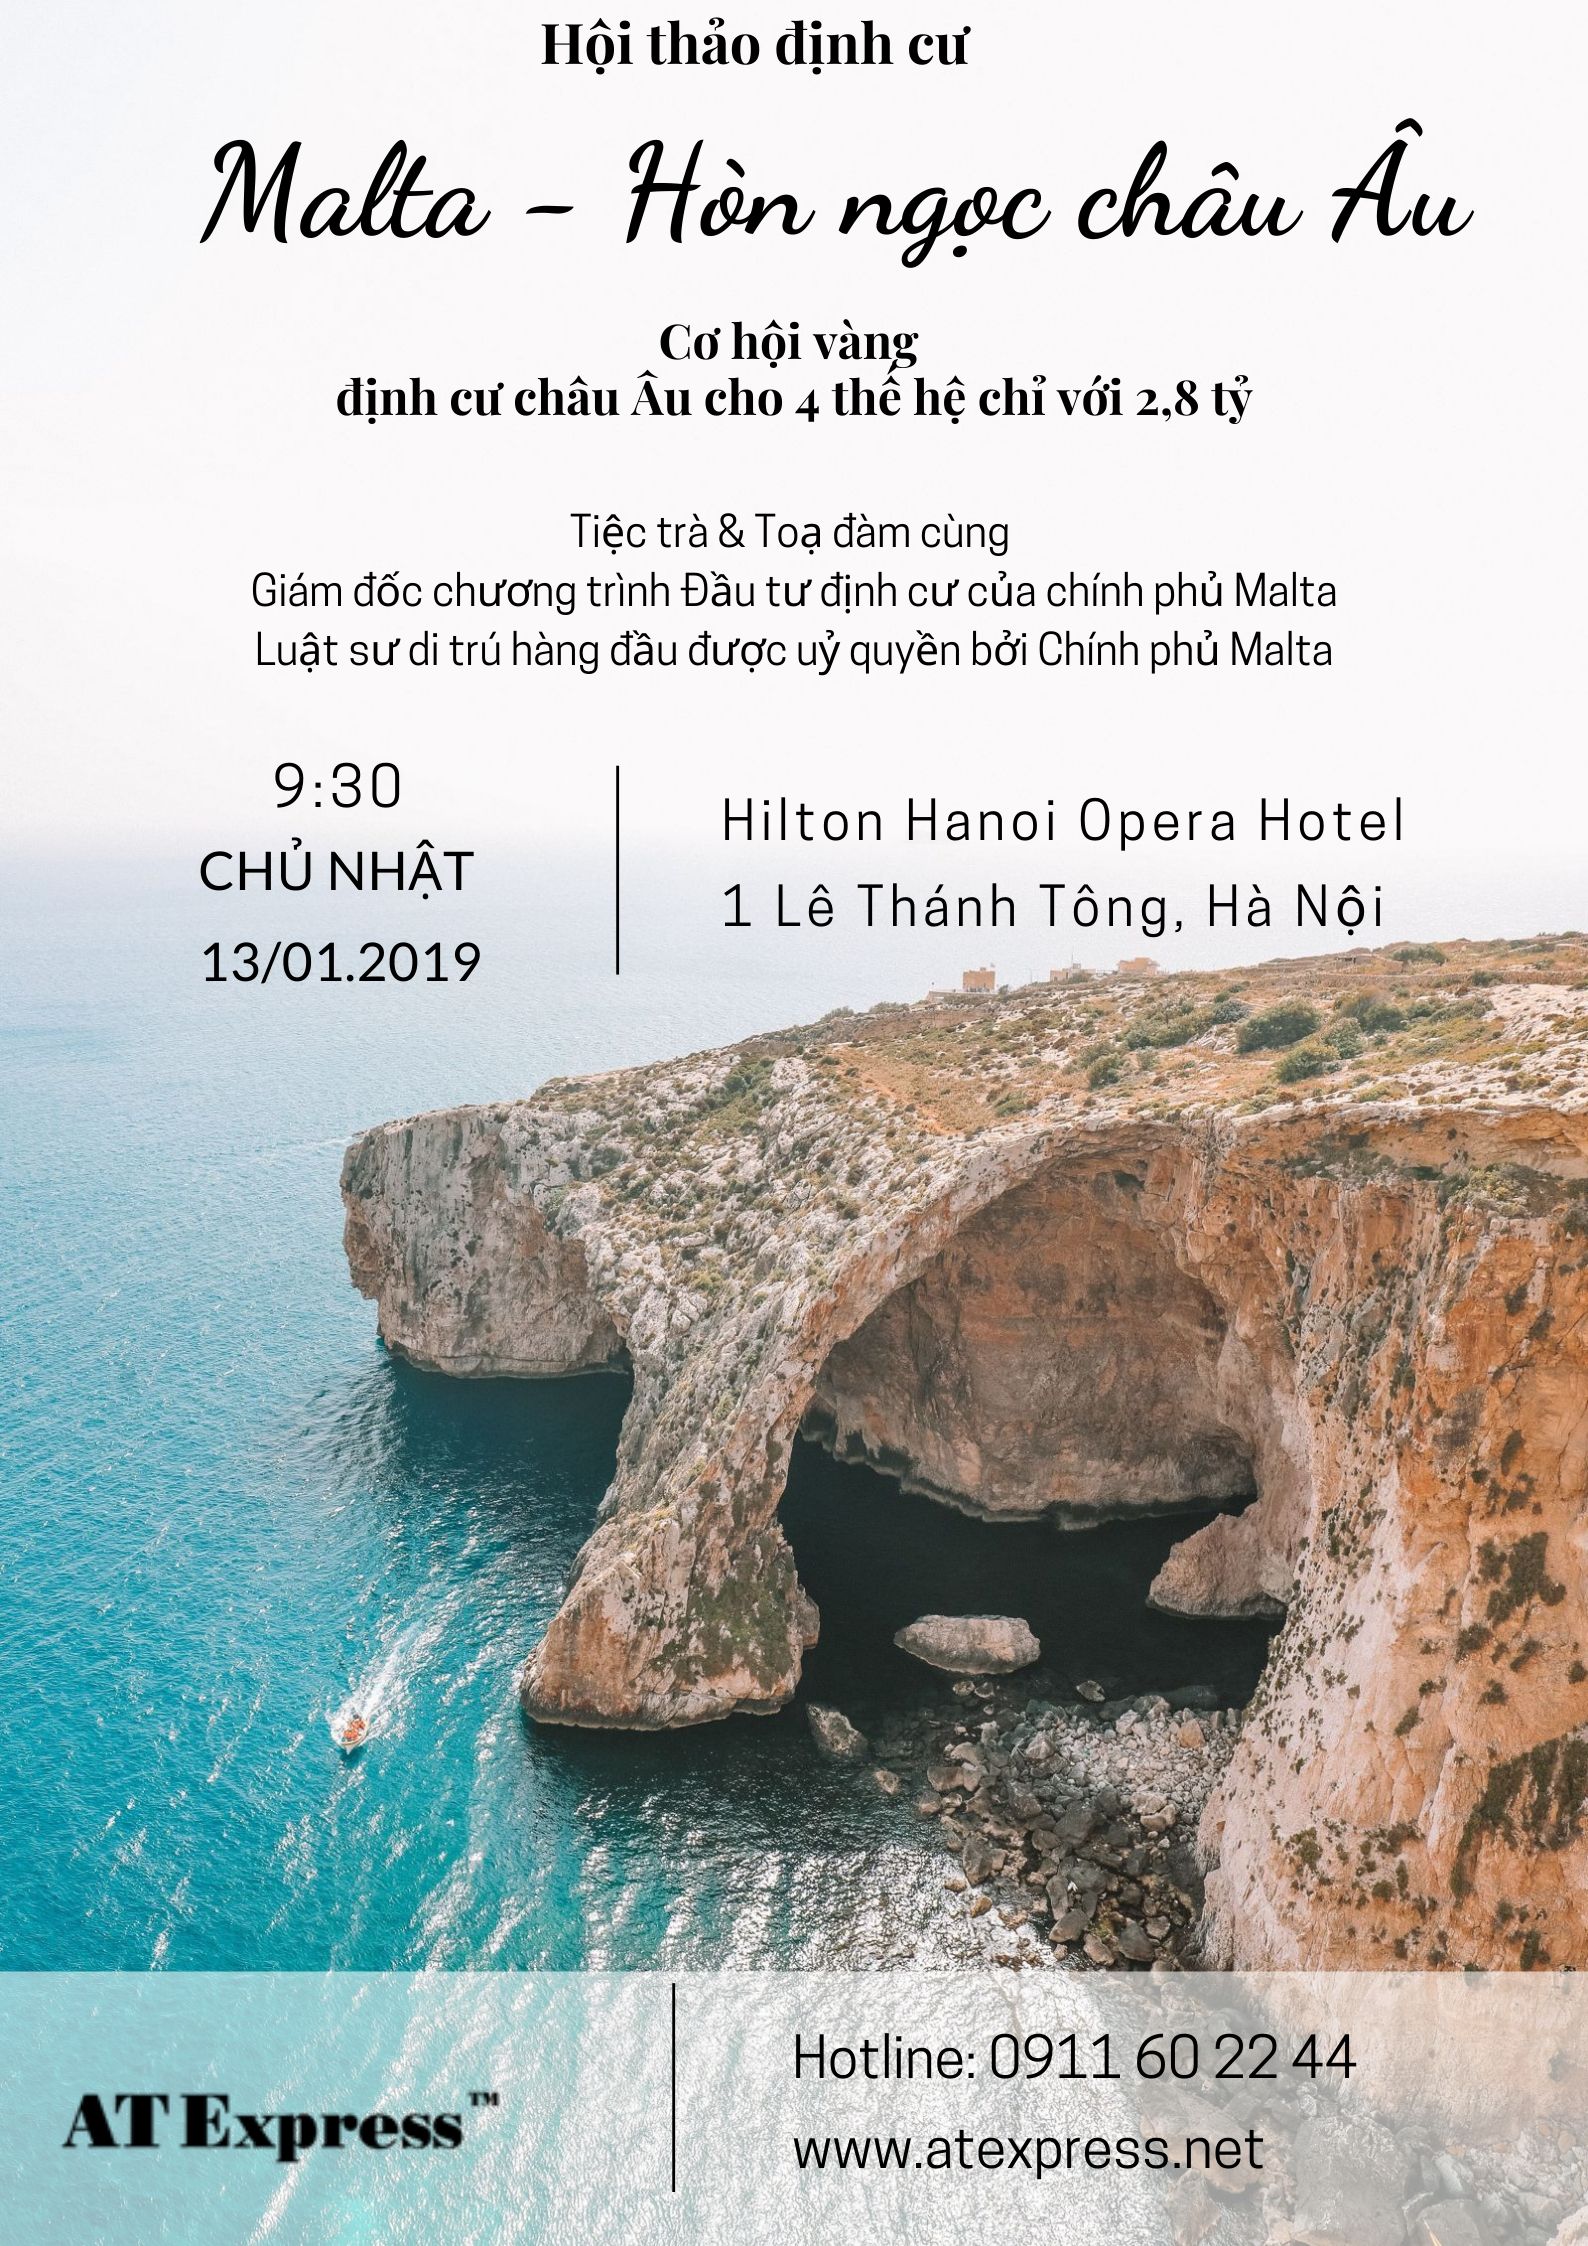 Hội thảo: Định cư Malta – Hòn ngọc Châu Âu 13.01.2019